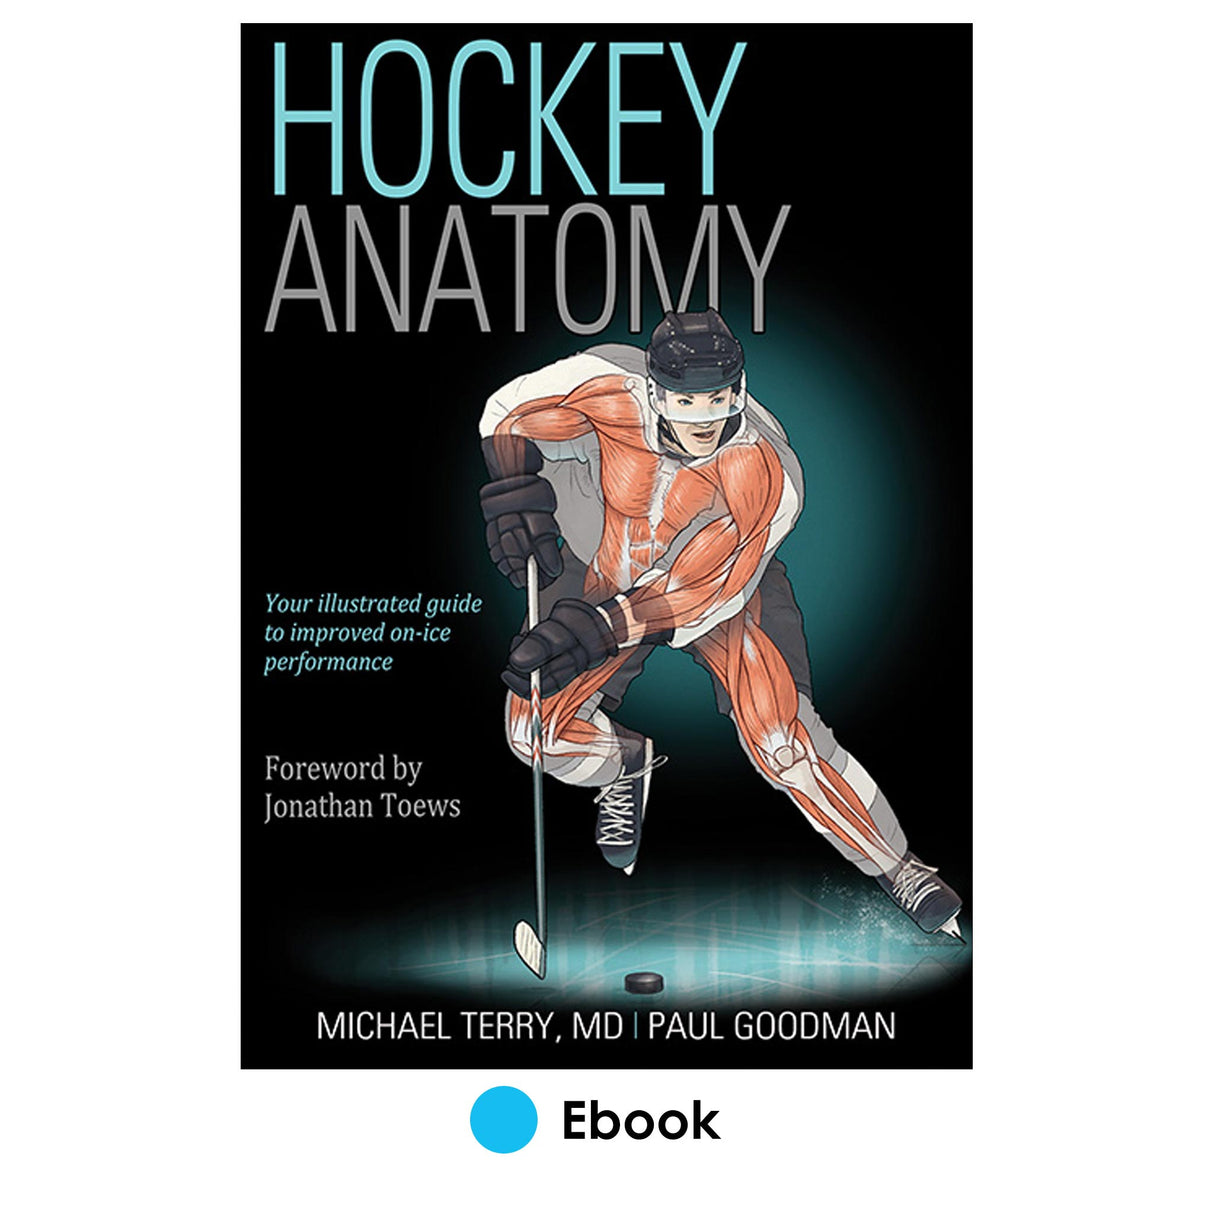 Hockey Anatomy epub